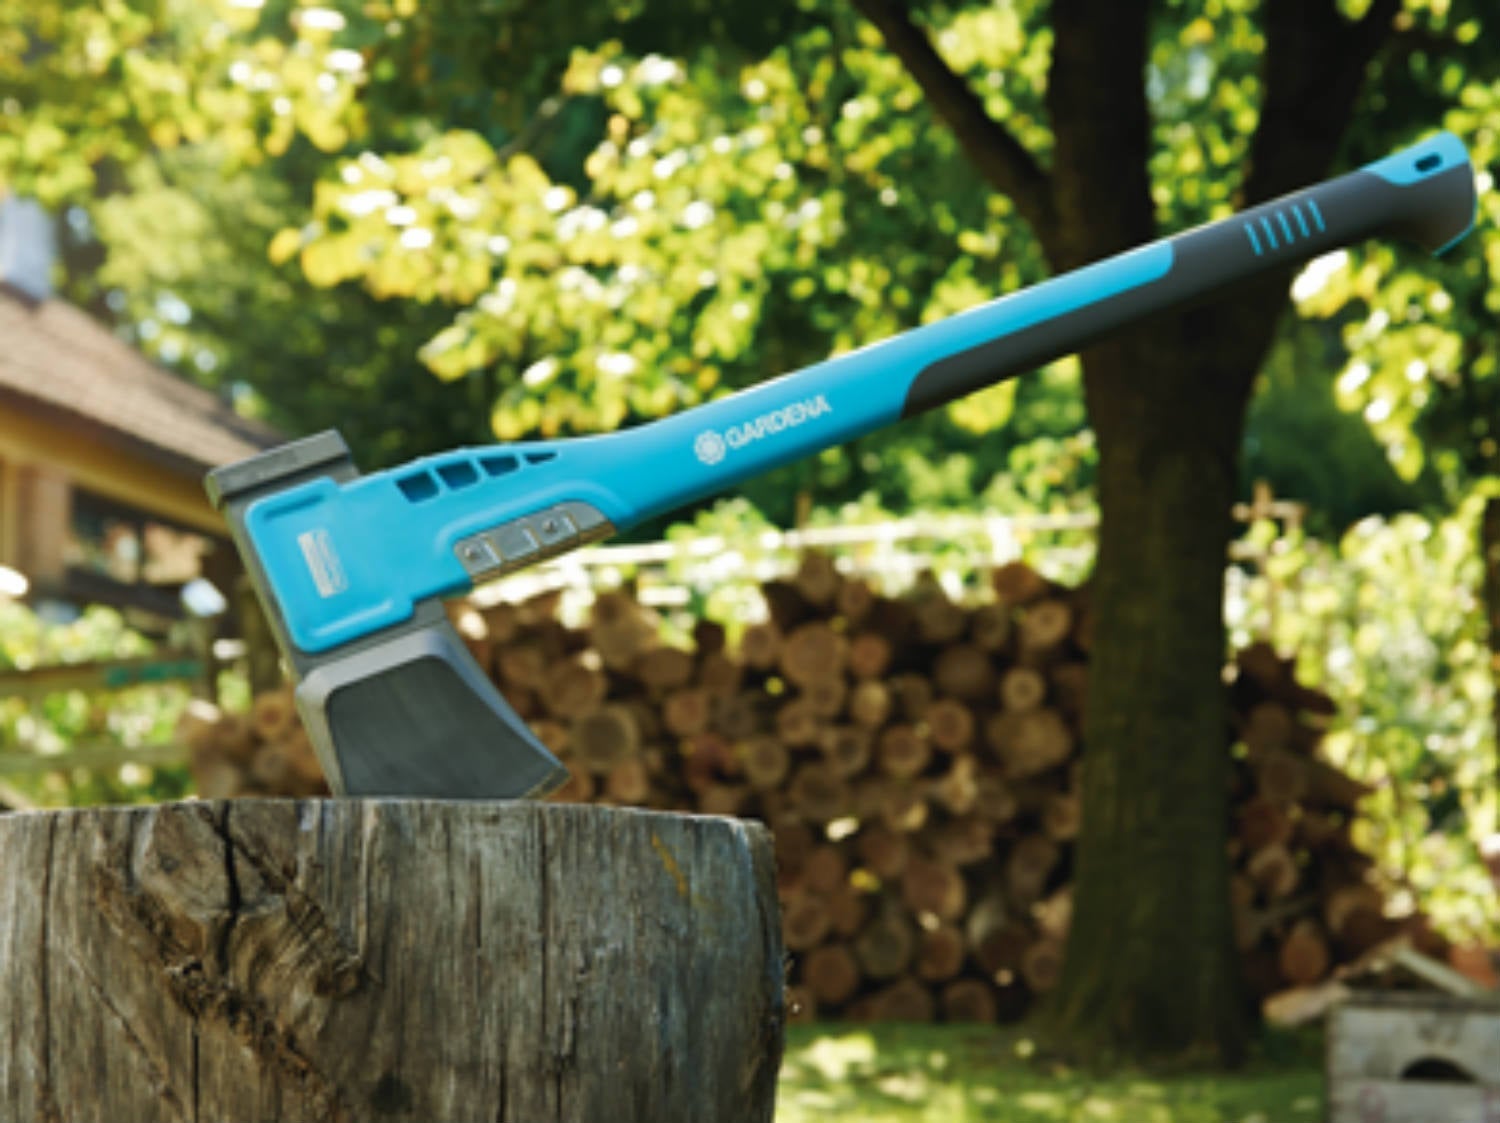 Comment choisir ses outils pour couper et débiter du bois ?